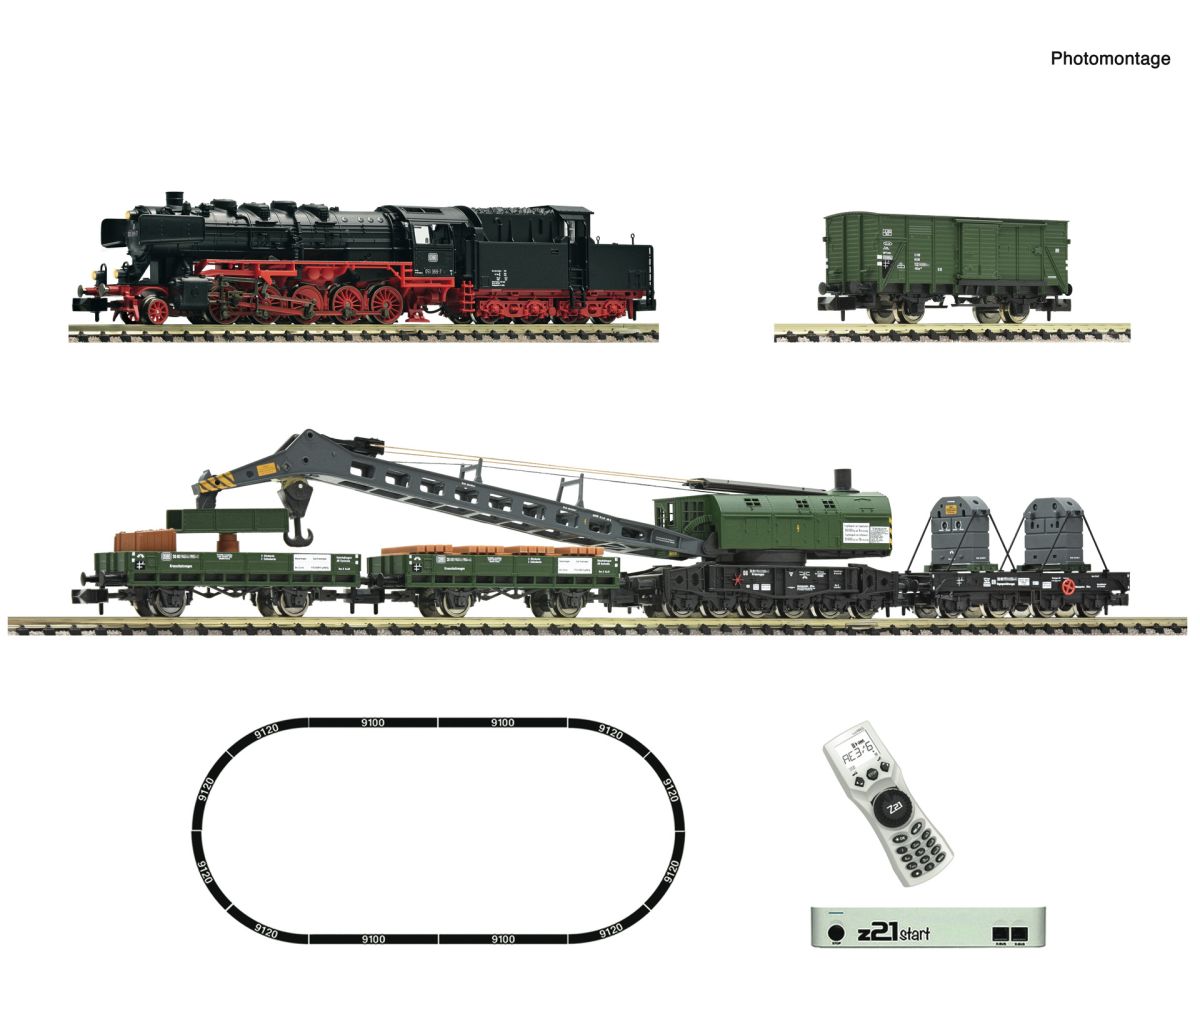 FLEISCHMANN 5170004 z21 start Digitalset: Dampflokomotive BR 051 mit Kranzug, DB DCC Spur N